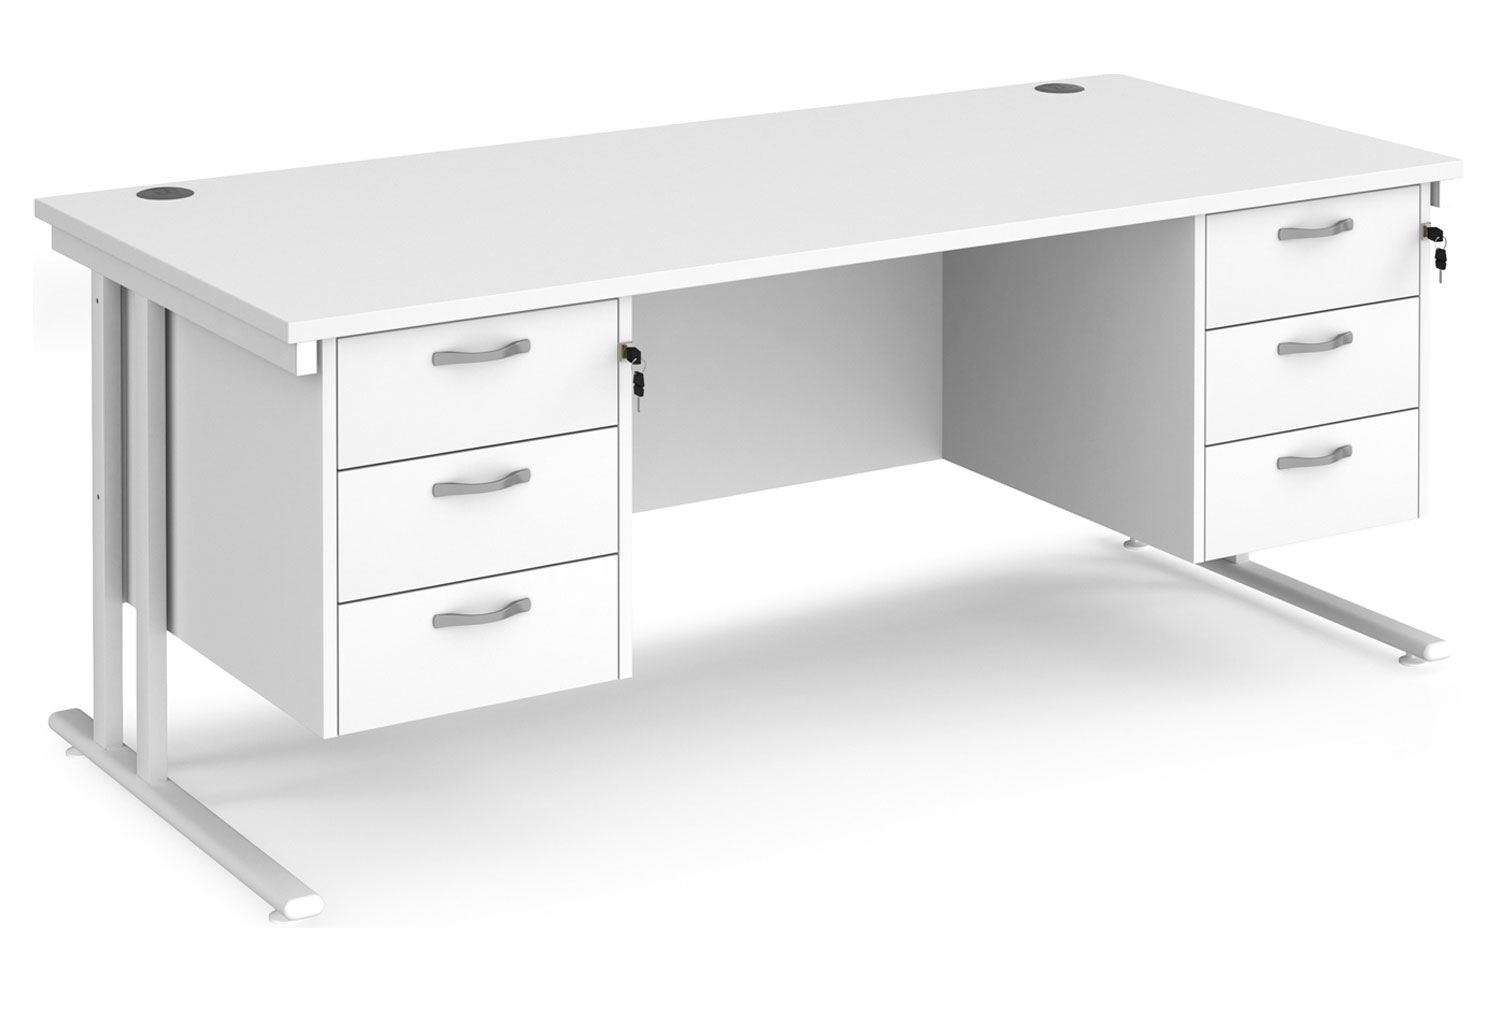 All White Premium C-Leg Rectangular Office Desk 3+3 Drawers, 180wx80dx73h (cm), Fully Installed